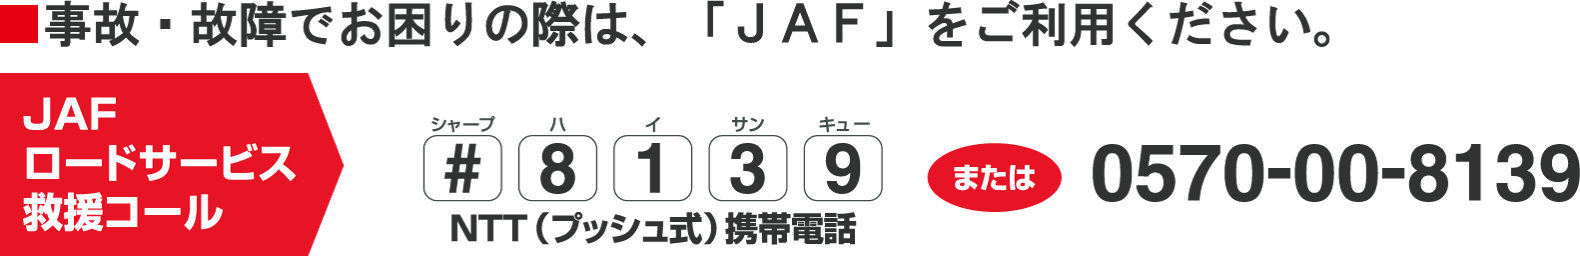 JAFロードサービス救援コール